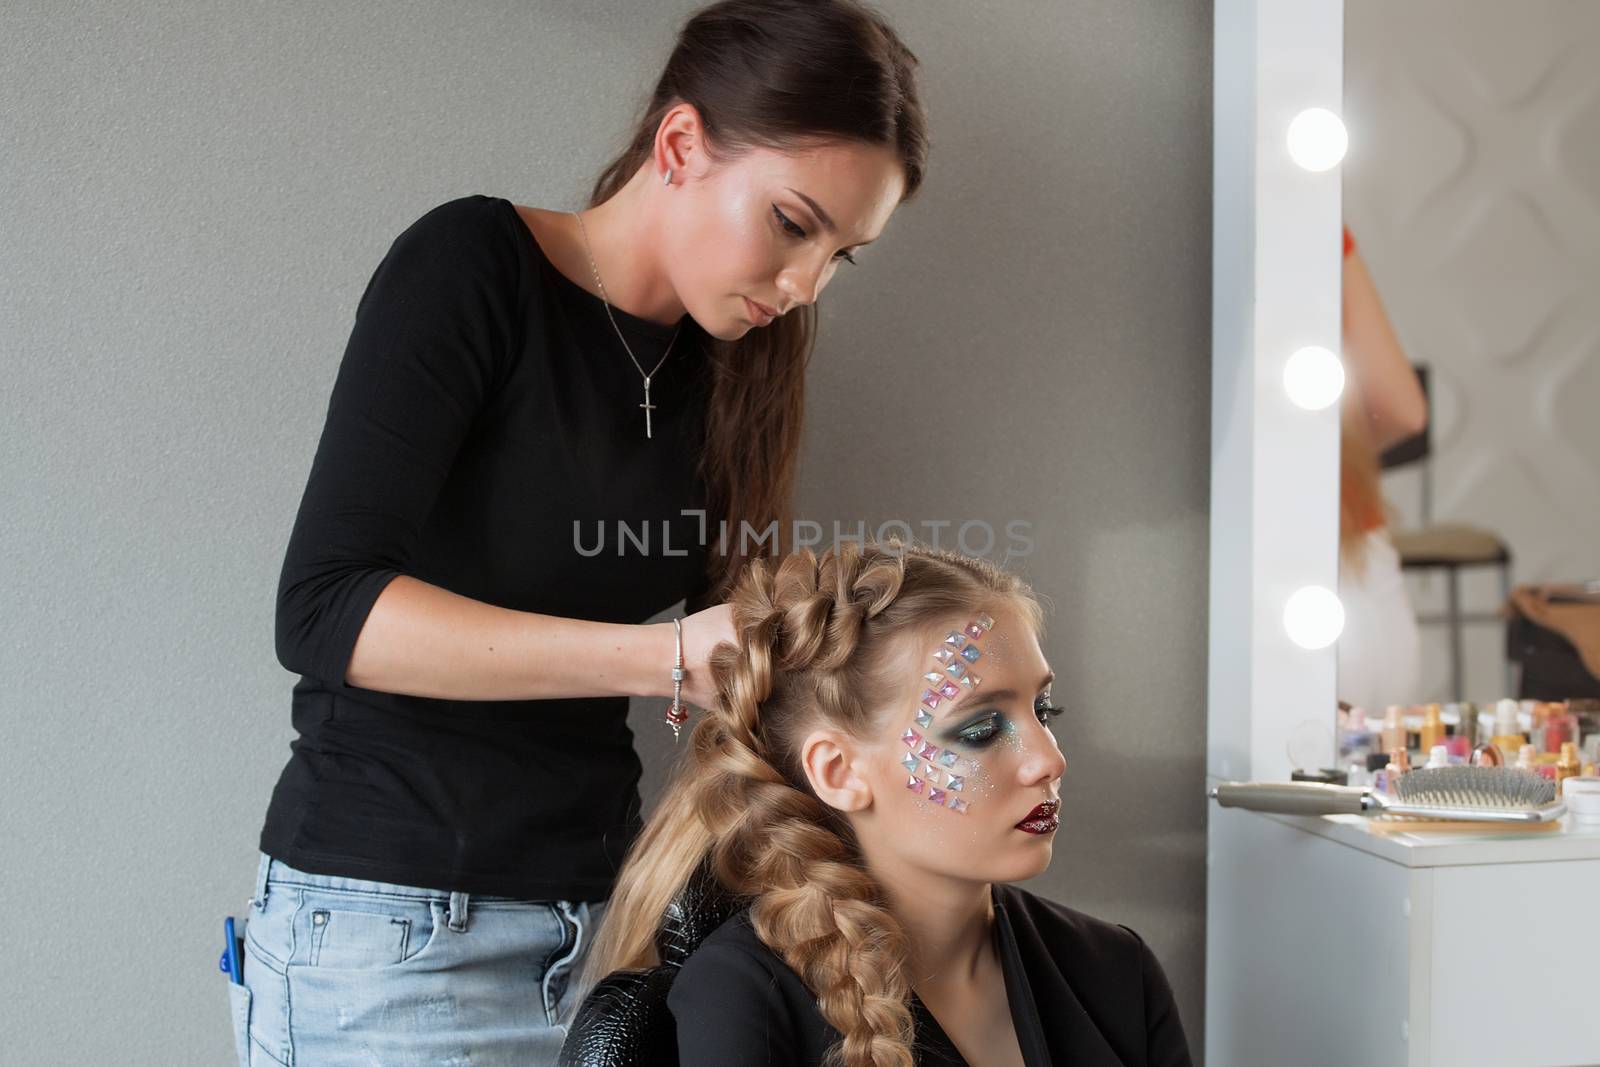 Weave braid girl in a hair salon.